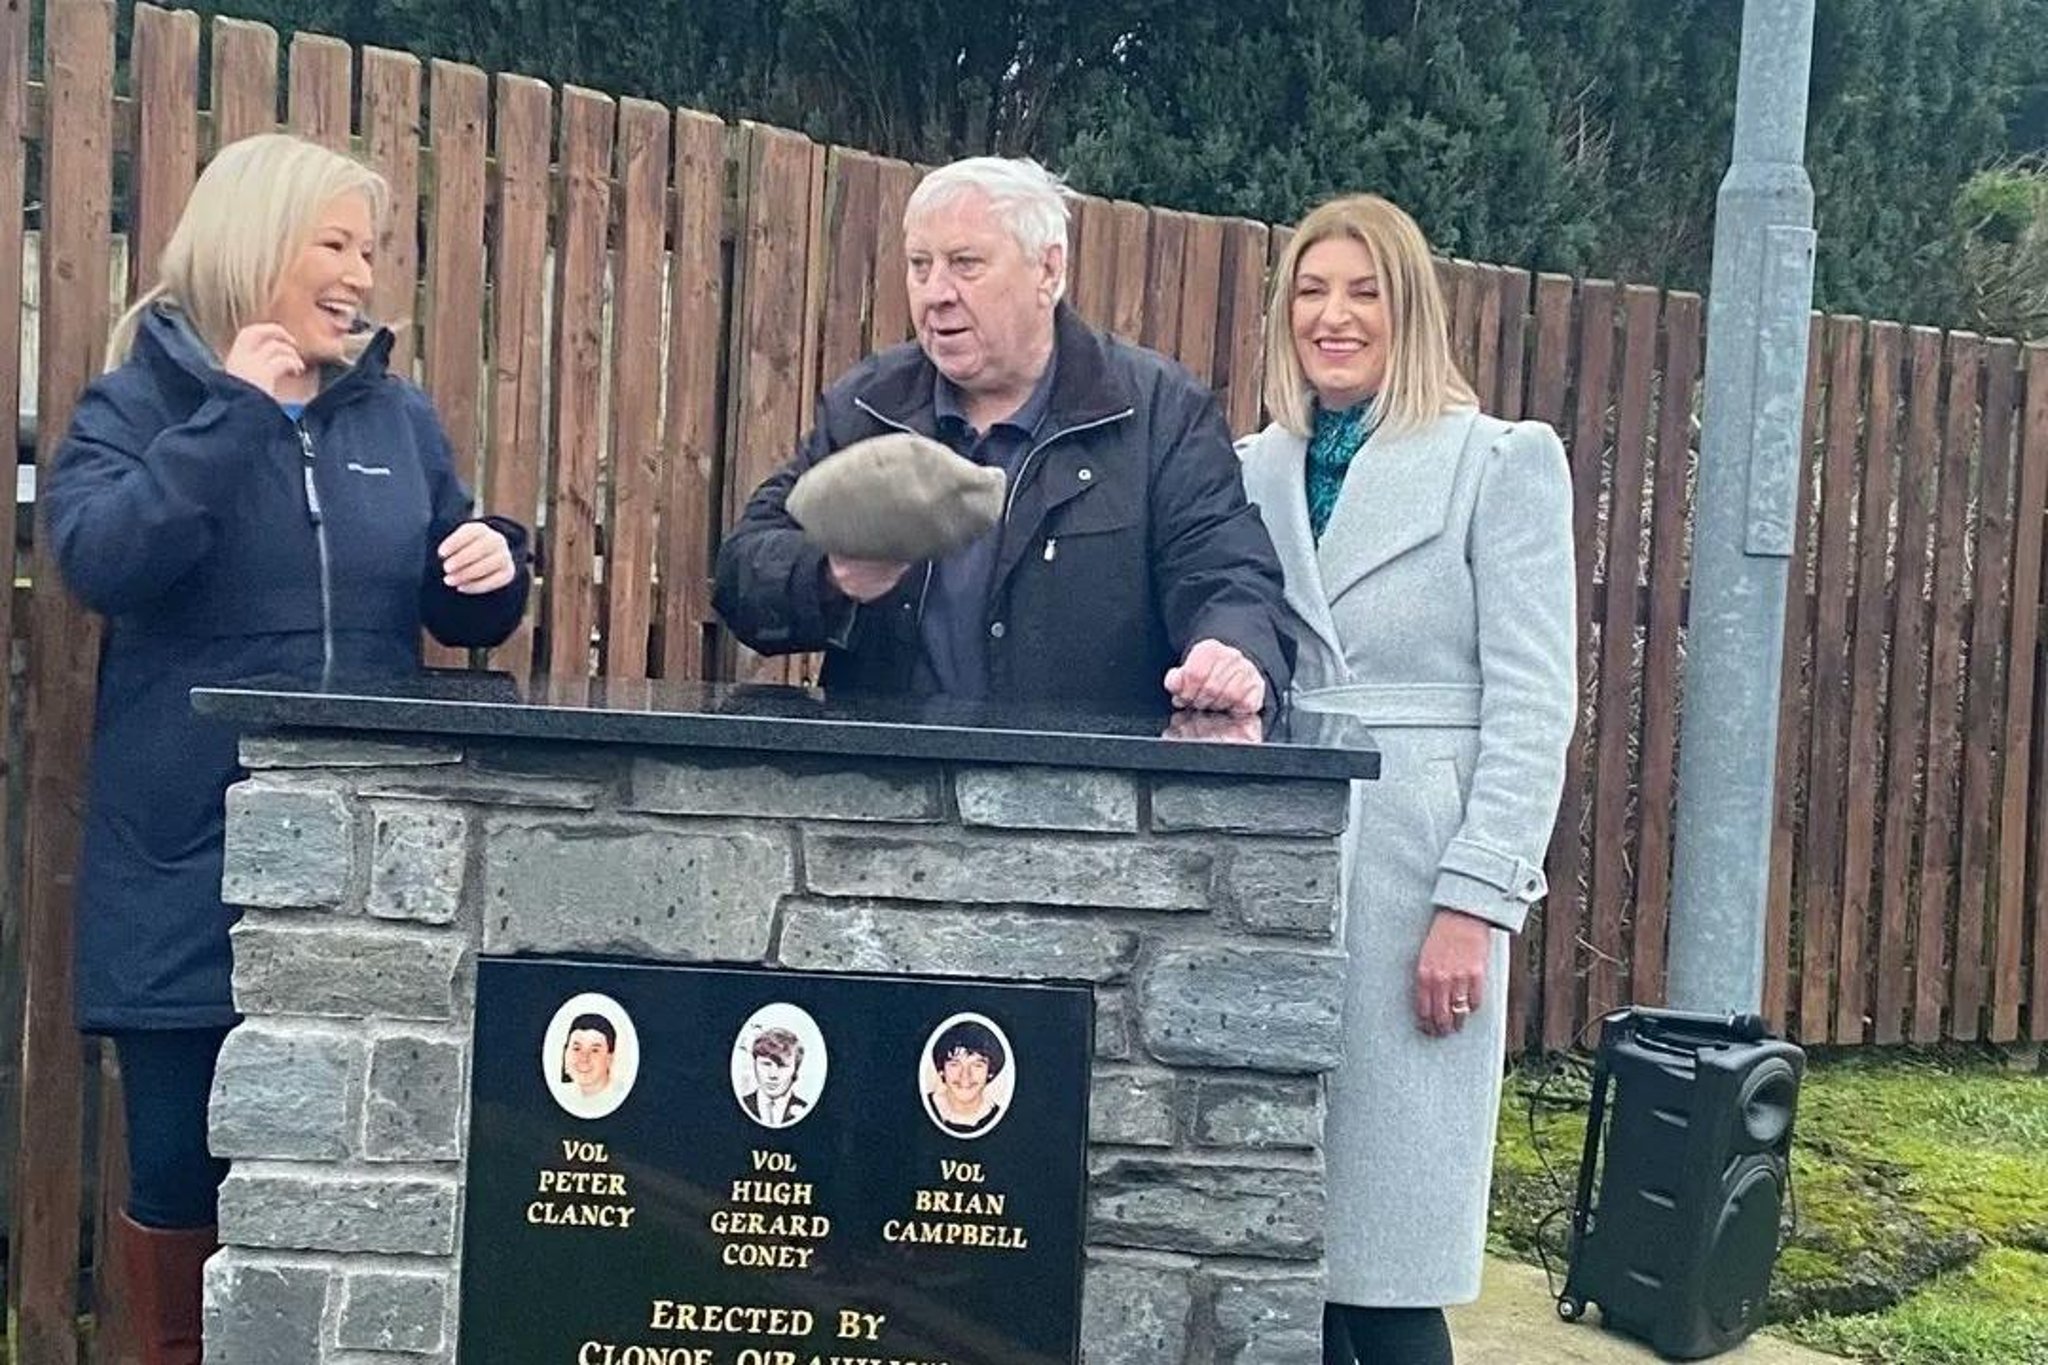 Michelle O'Neill under fire after attending IRA-GAA memorial launch